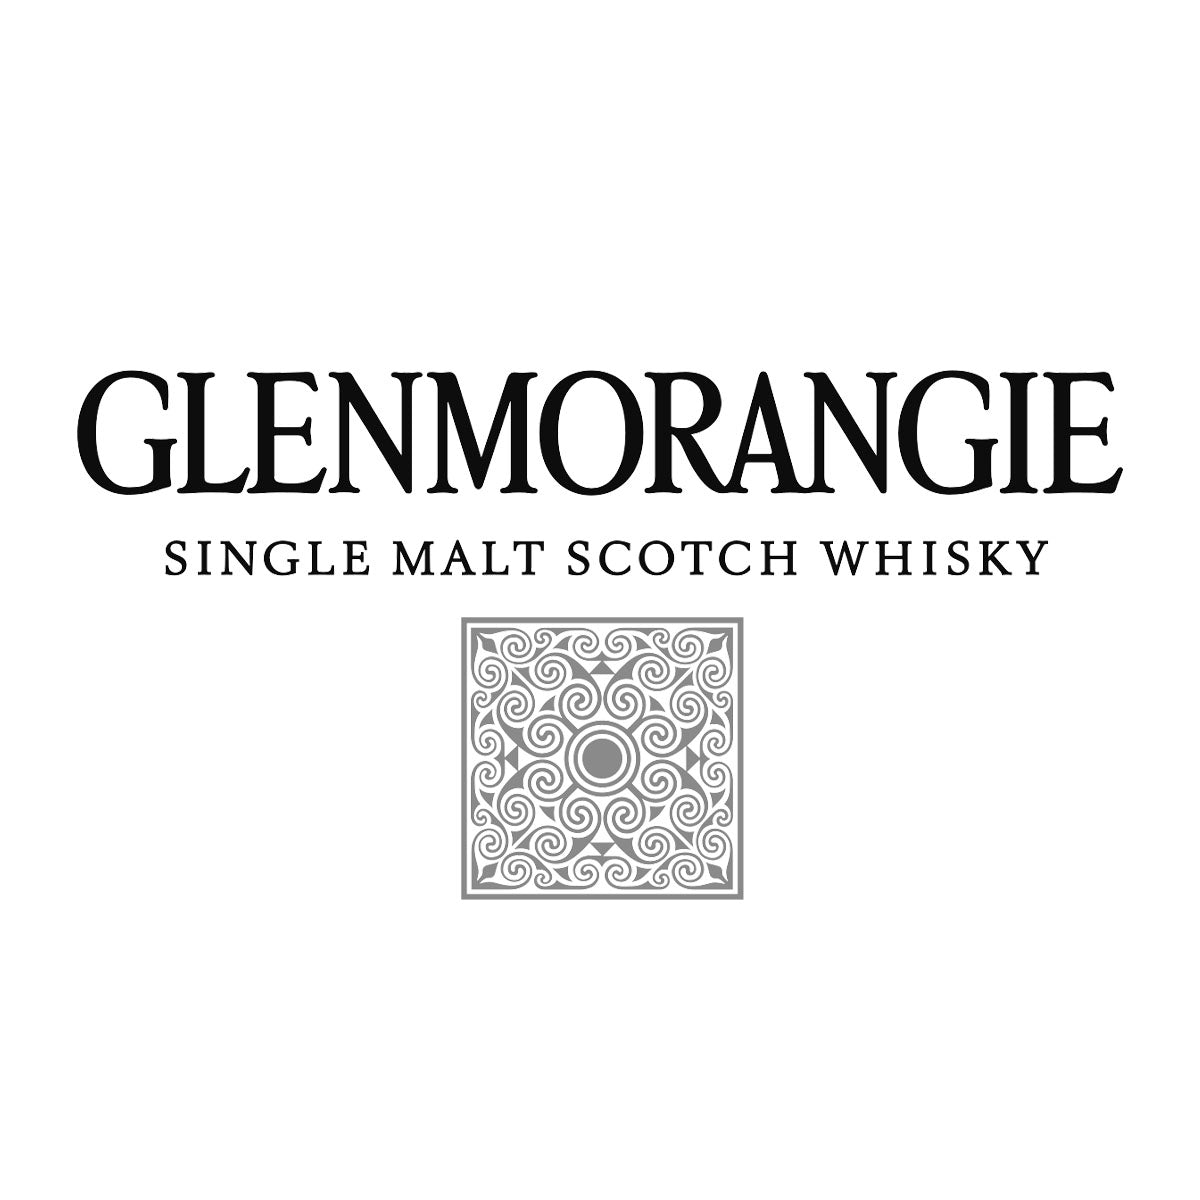 Glenmorangie – Mark Littler